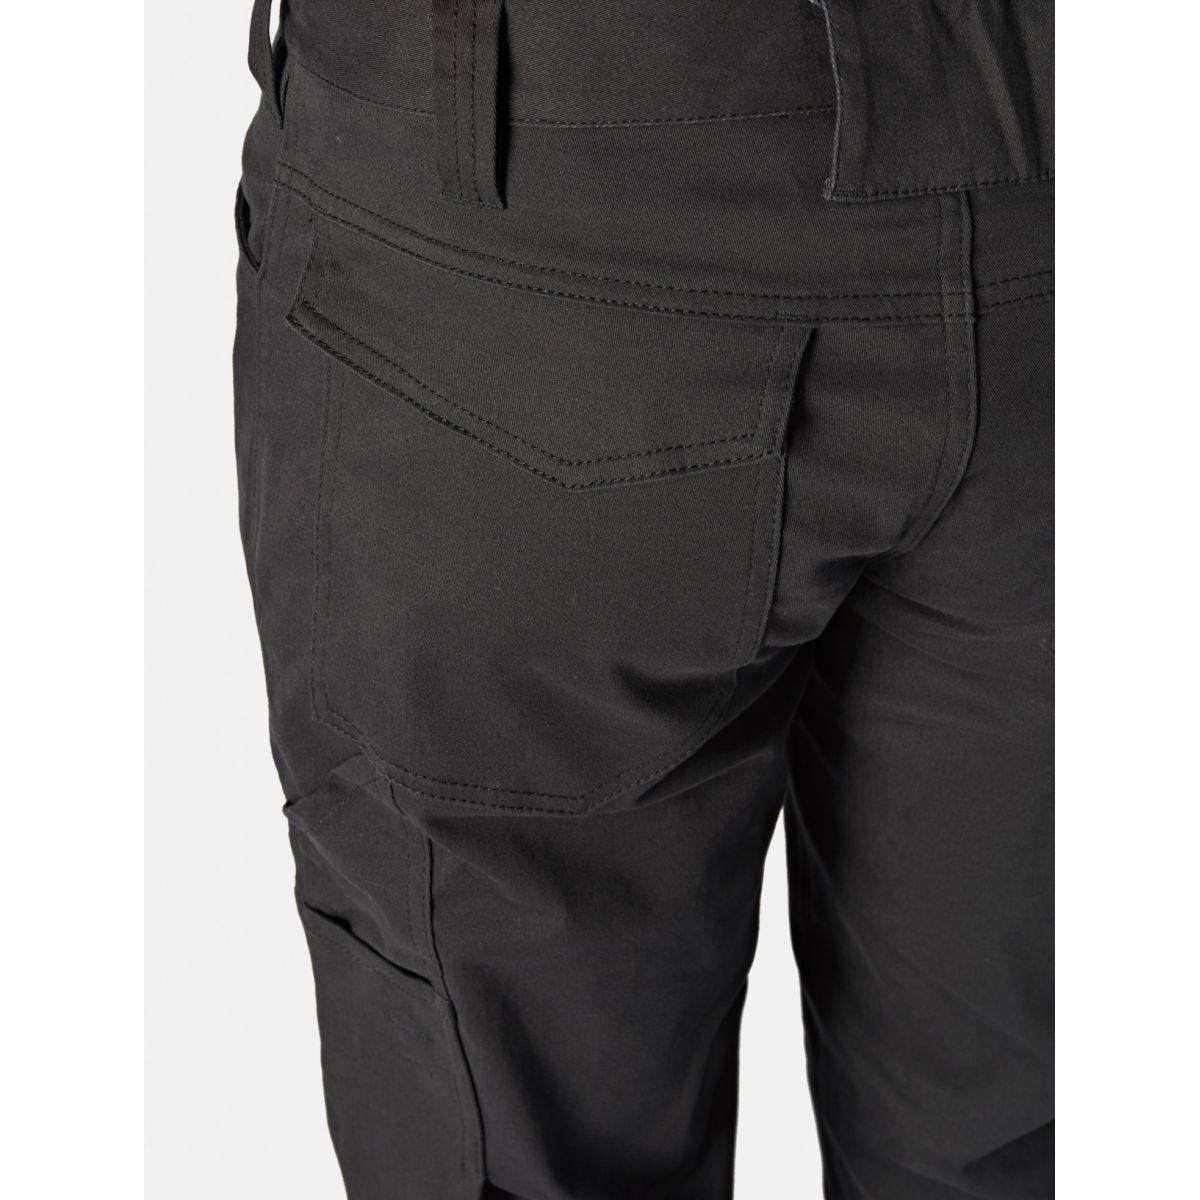 Pantalon Lead In Flex Noir - Dickies - Taille 50 2